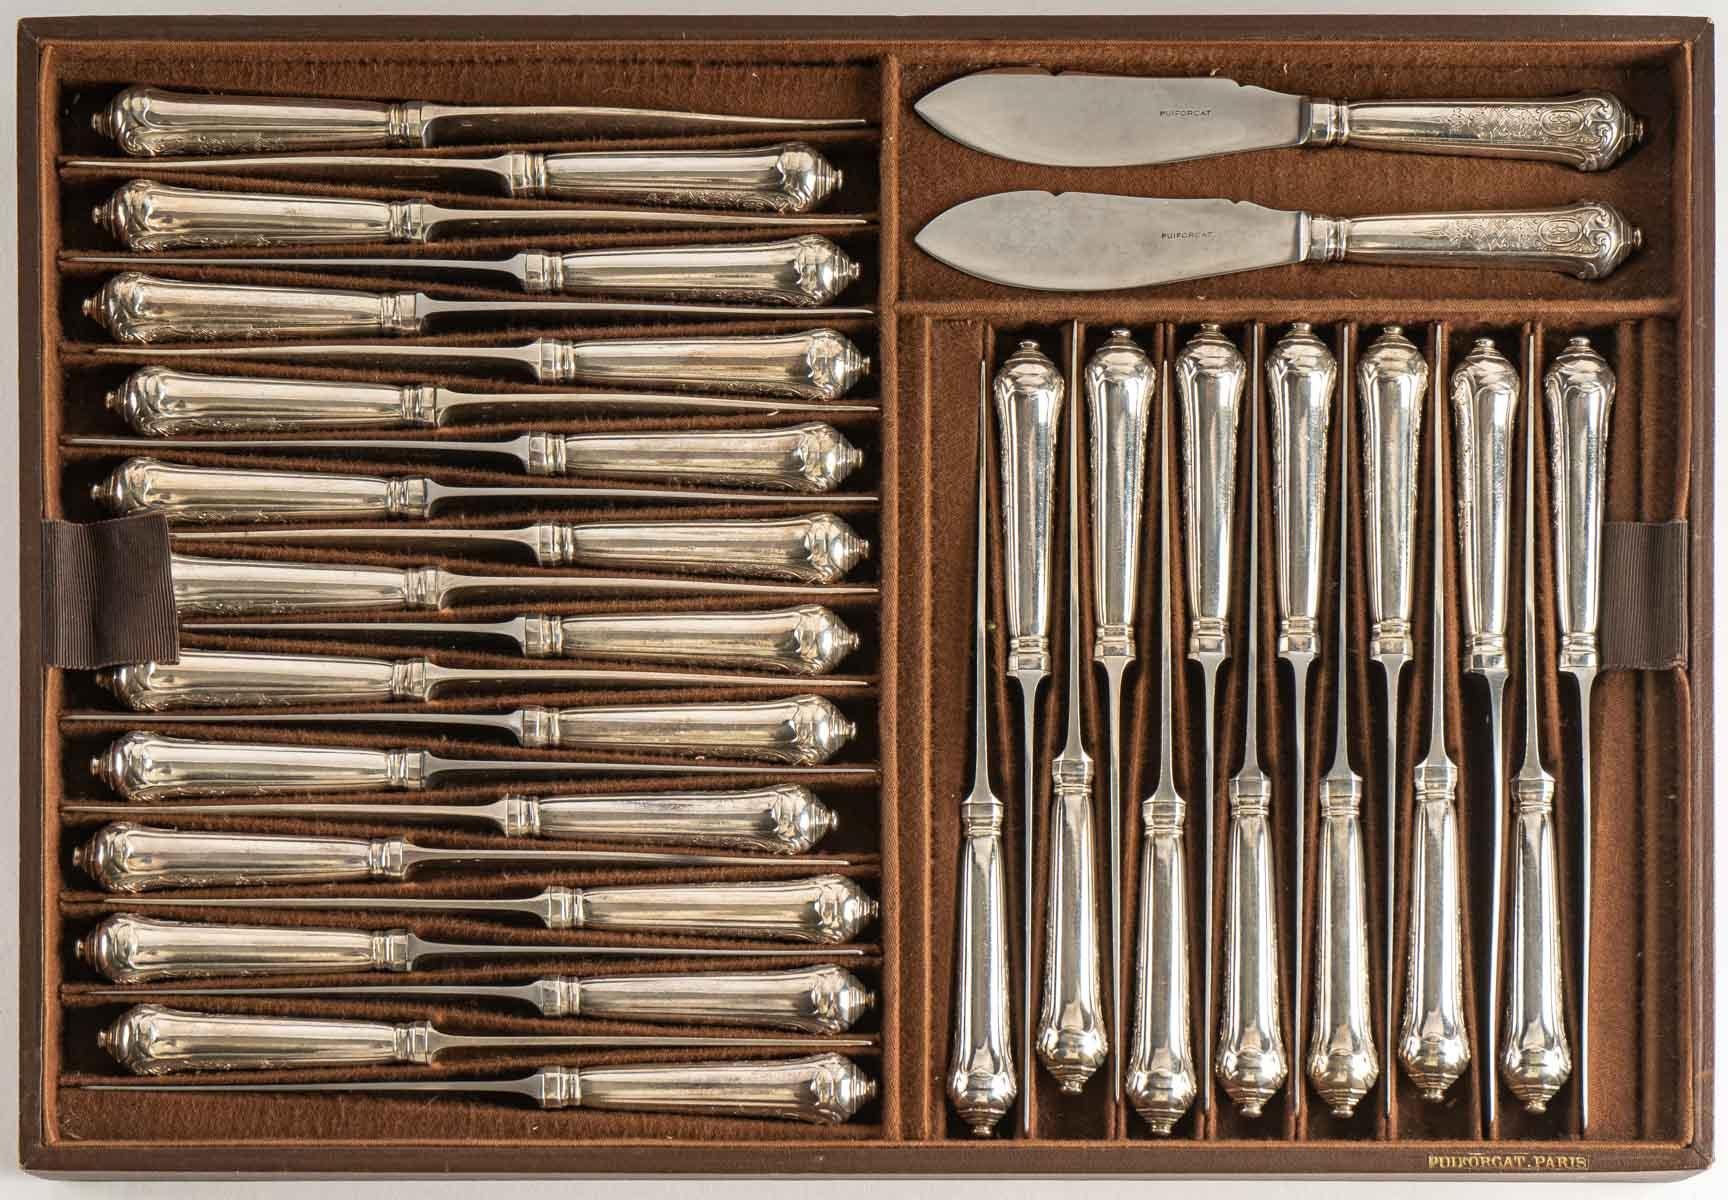 Danish Emile Puiforcat Paris Elysée Cutlery Set Sterling Pure Silver, 293 Pieces